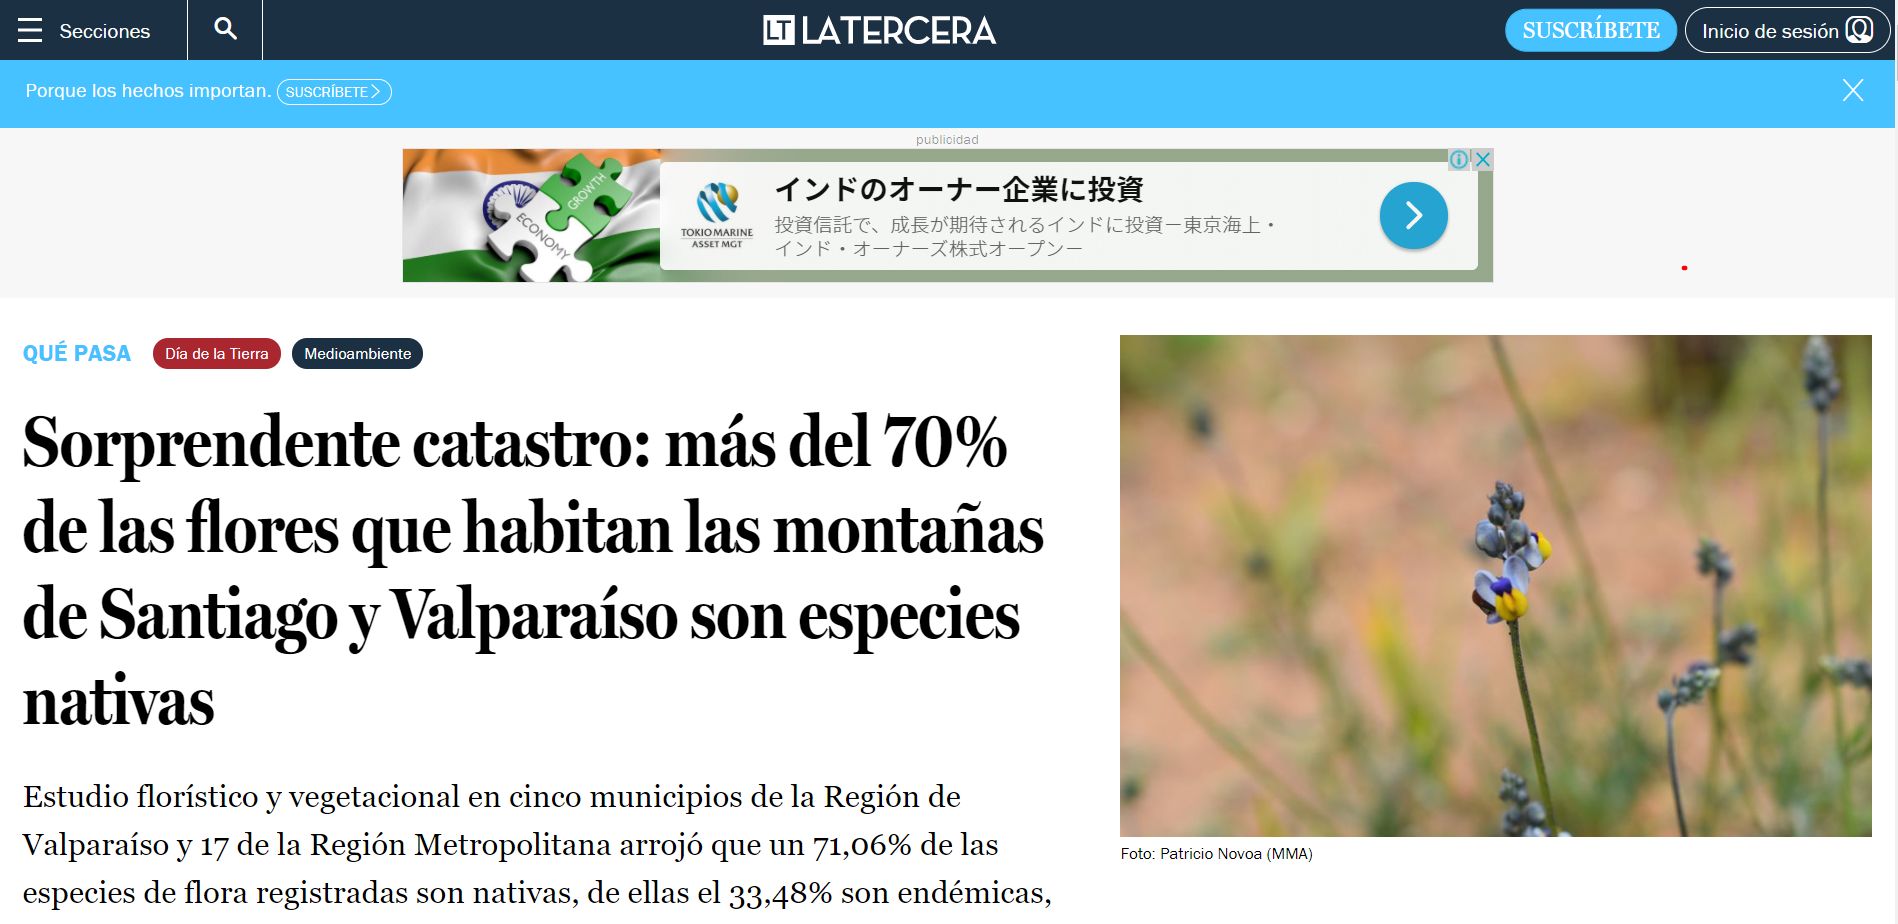 Sorprendente catastro: más del 70% de las flores que habitan las montañas de Santiago y Valparaíso son especies nativas